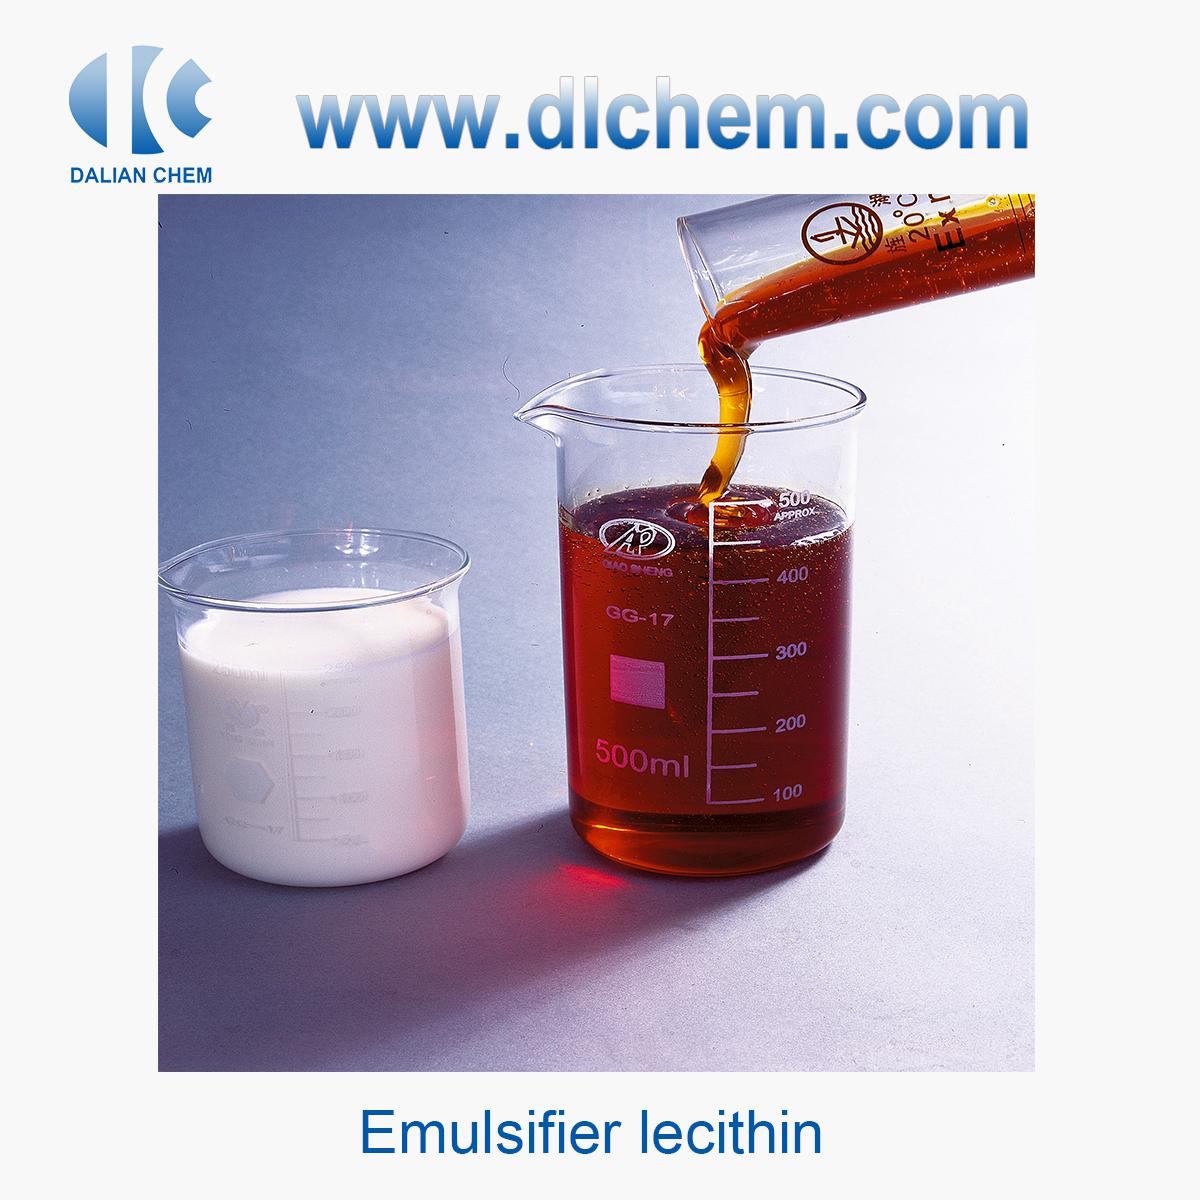 Emulsifier lecithin